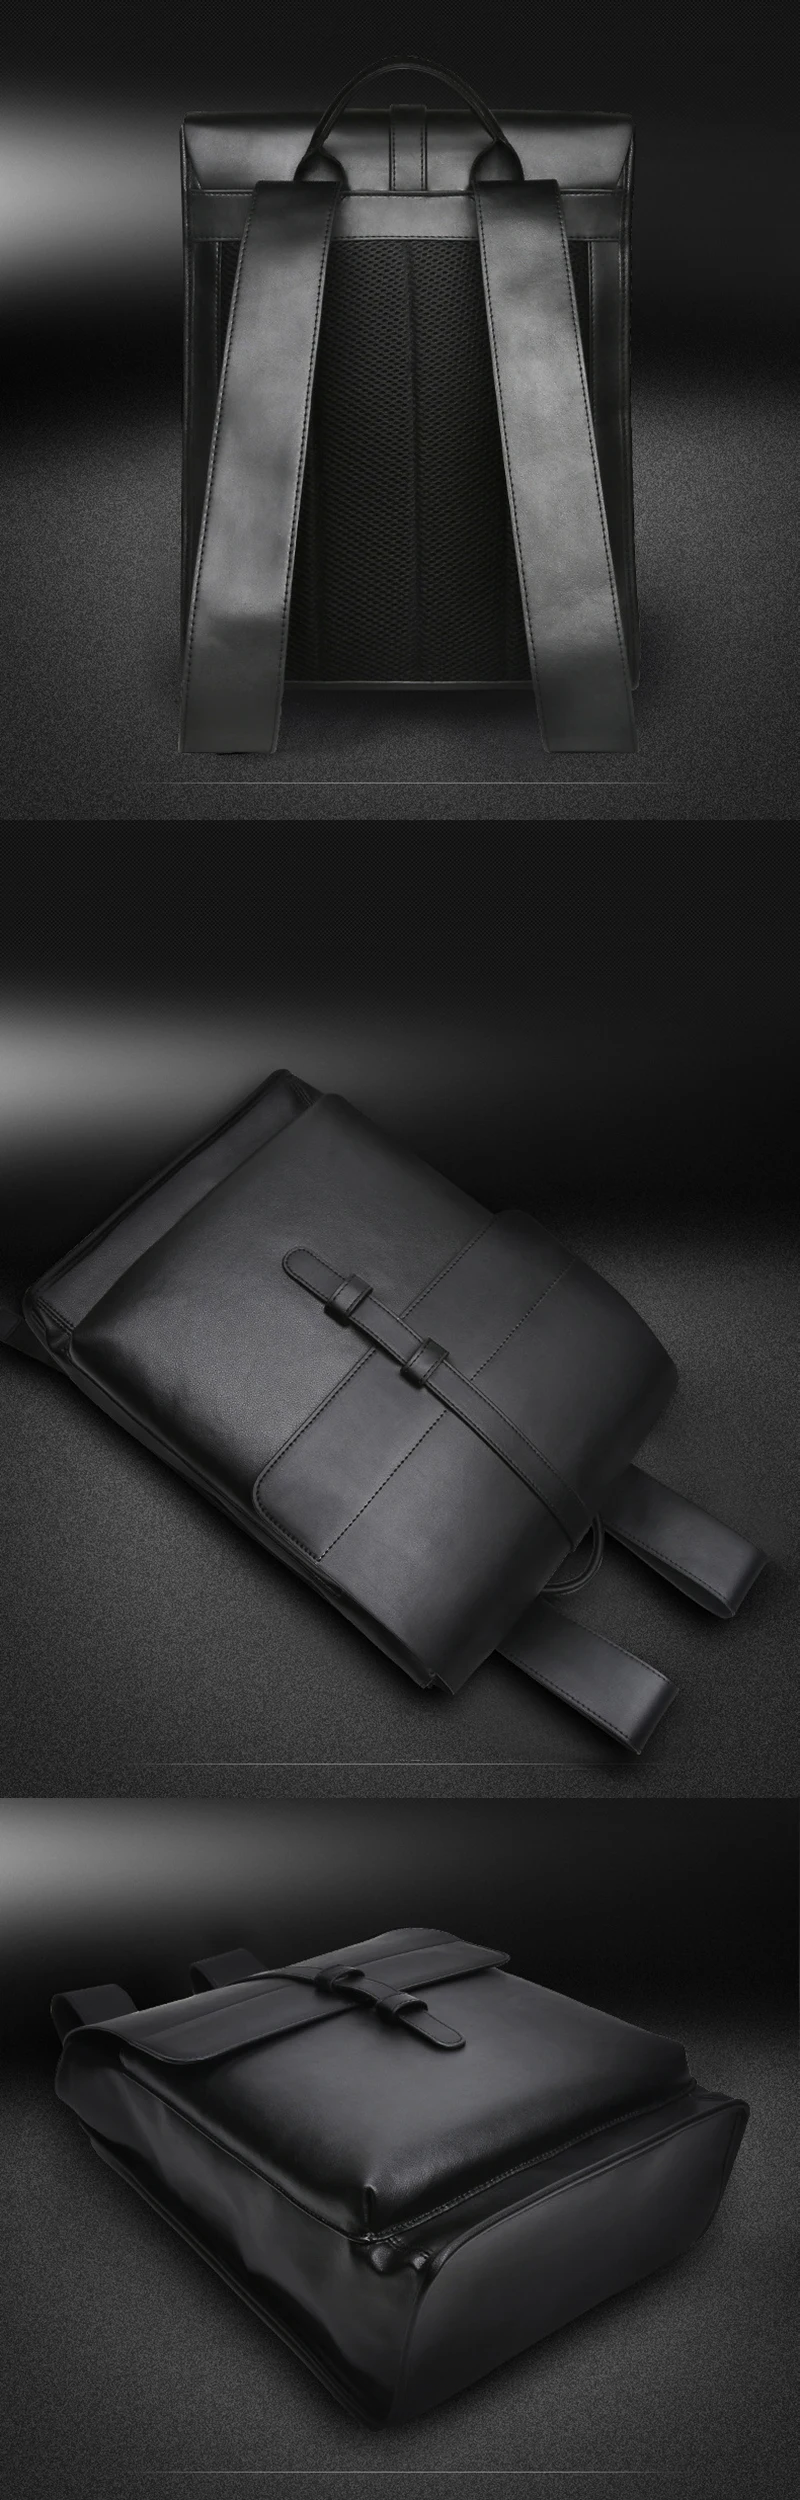 GNWXY мягкие из искусственной кожи Для мужчин Бизнес рюкзак водонепроницаемые школьные сумки для 16 дюймового ноутбука сумка для книг ученические сумки для путешествий школьные сумки